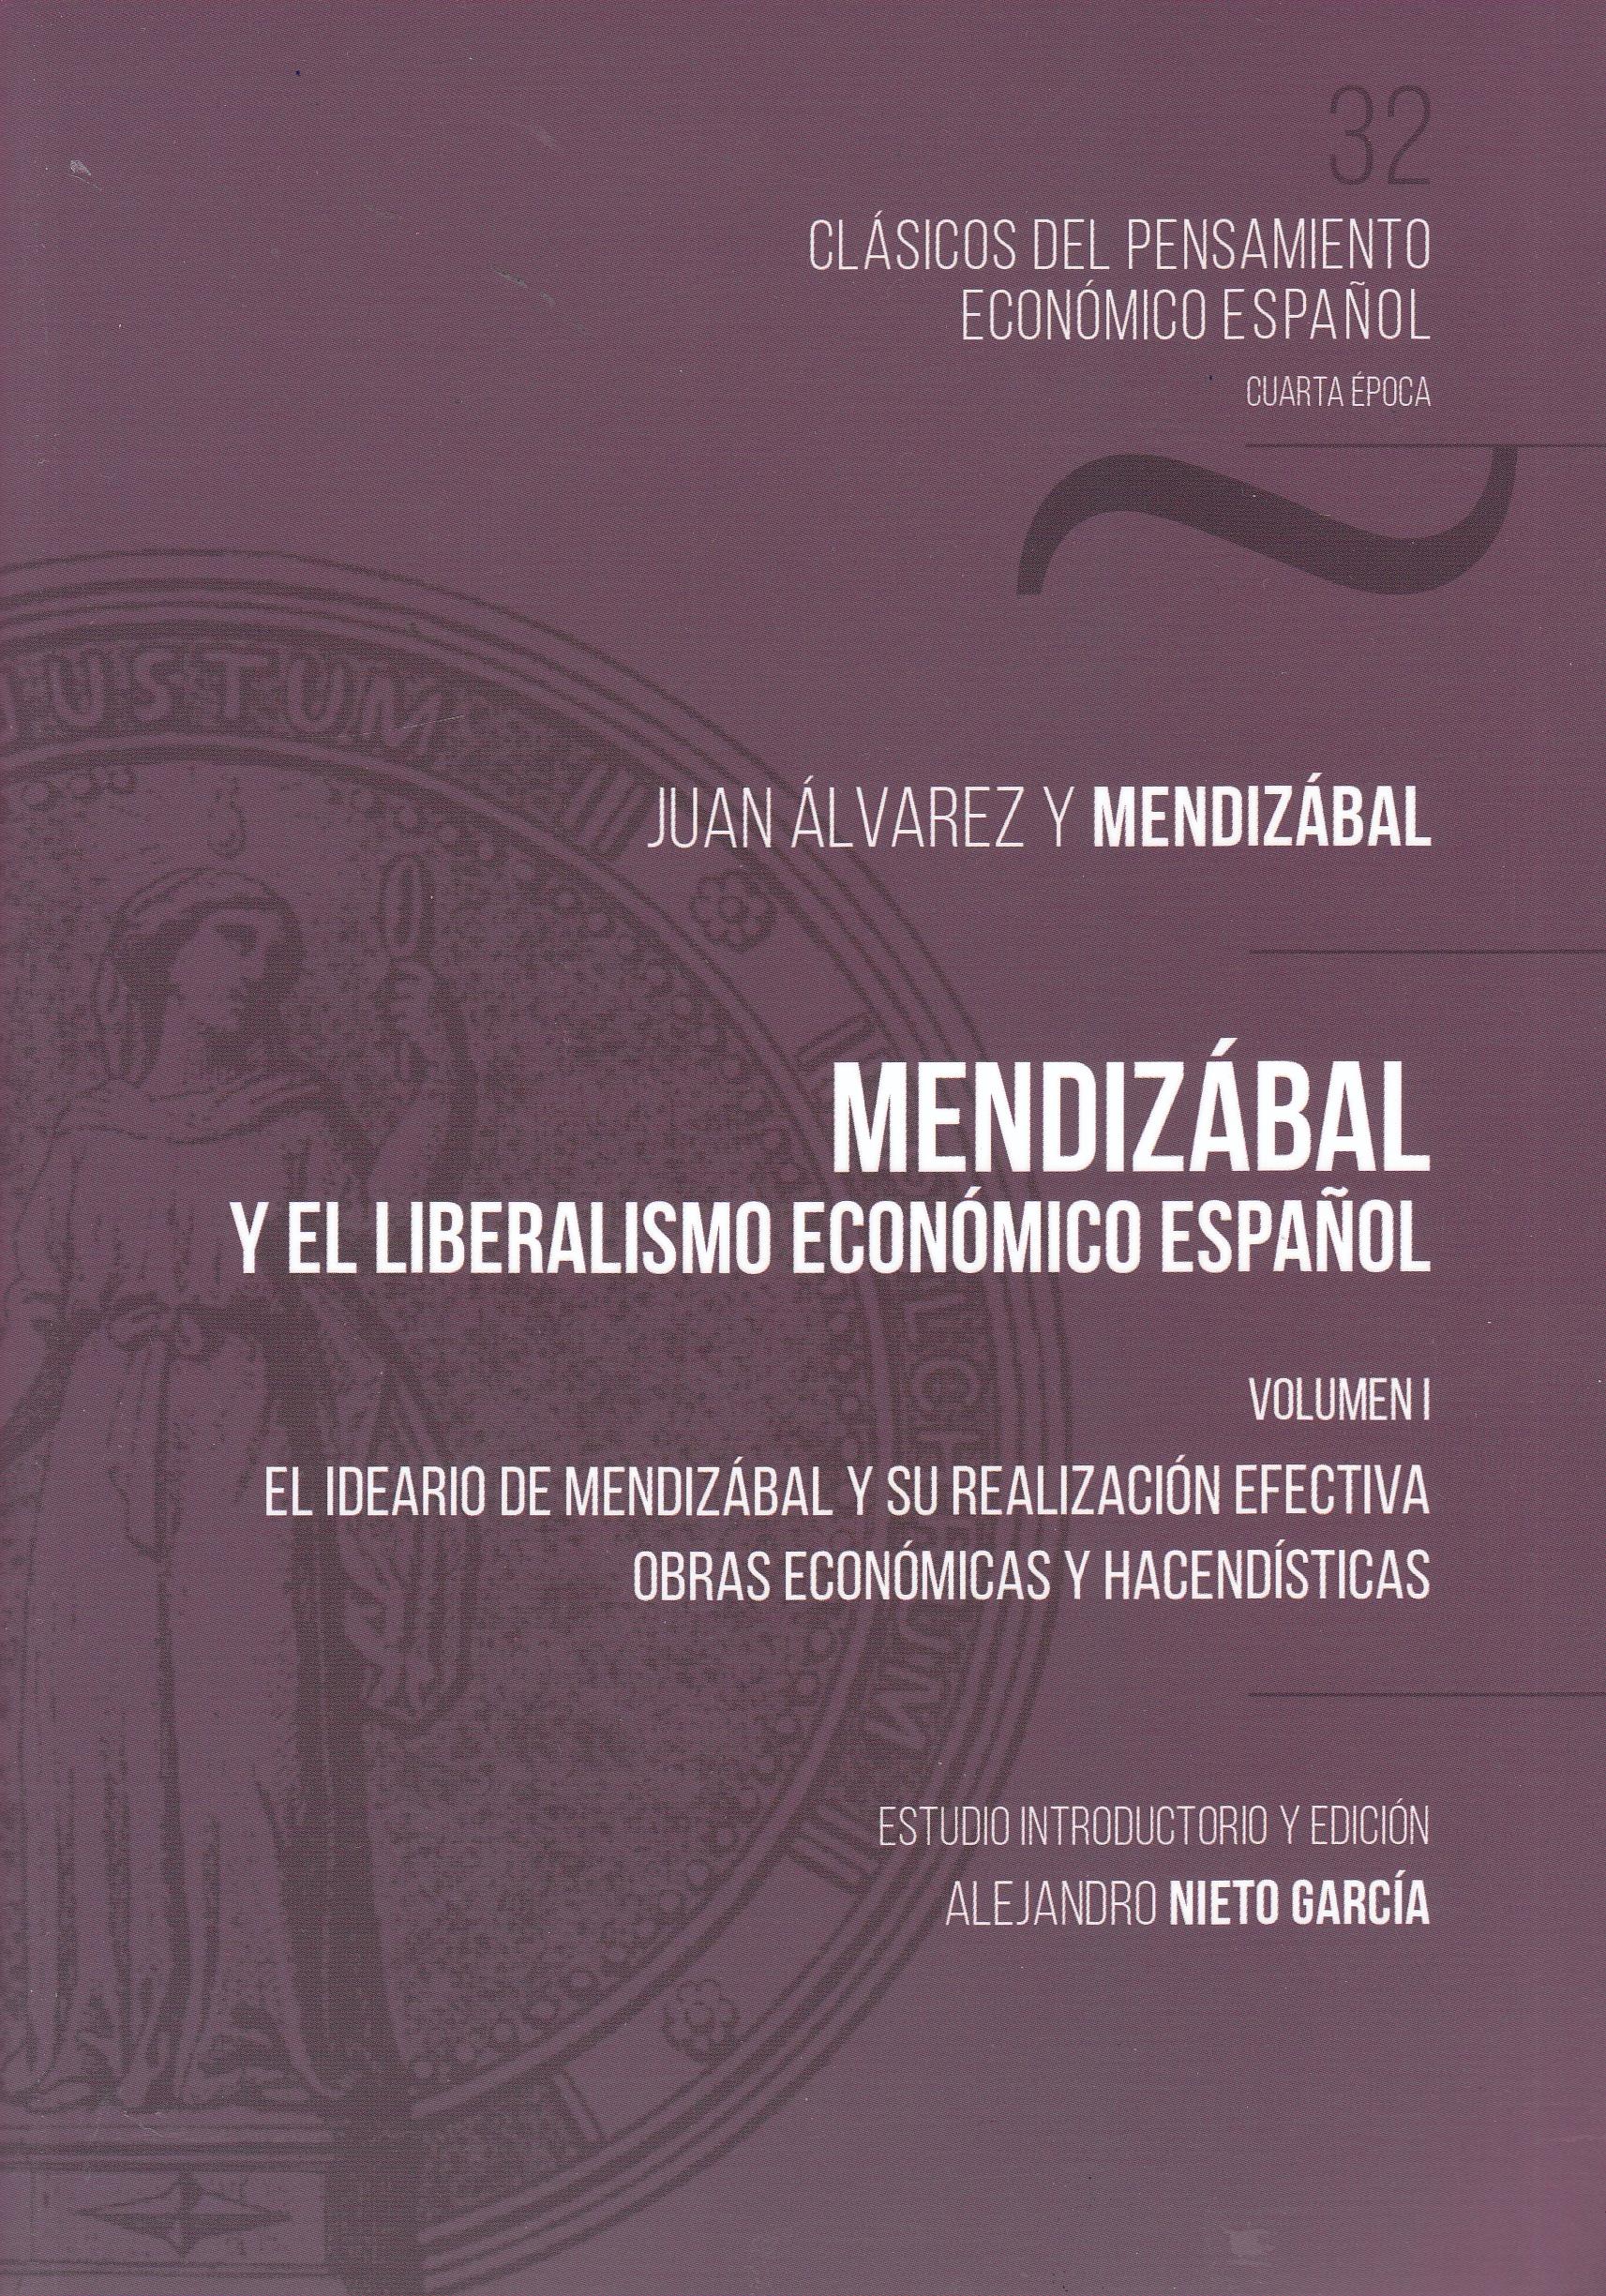 Mendizábal y el liberalismo económico español Vol.I "El ideario de Mendizábal y su realización efectiva. Obras económicas y hacendísticas"